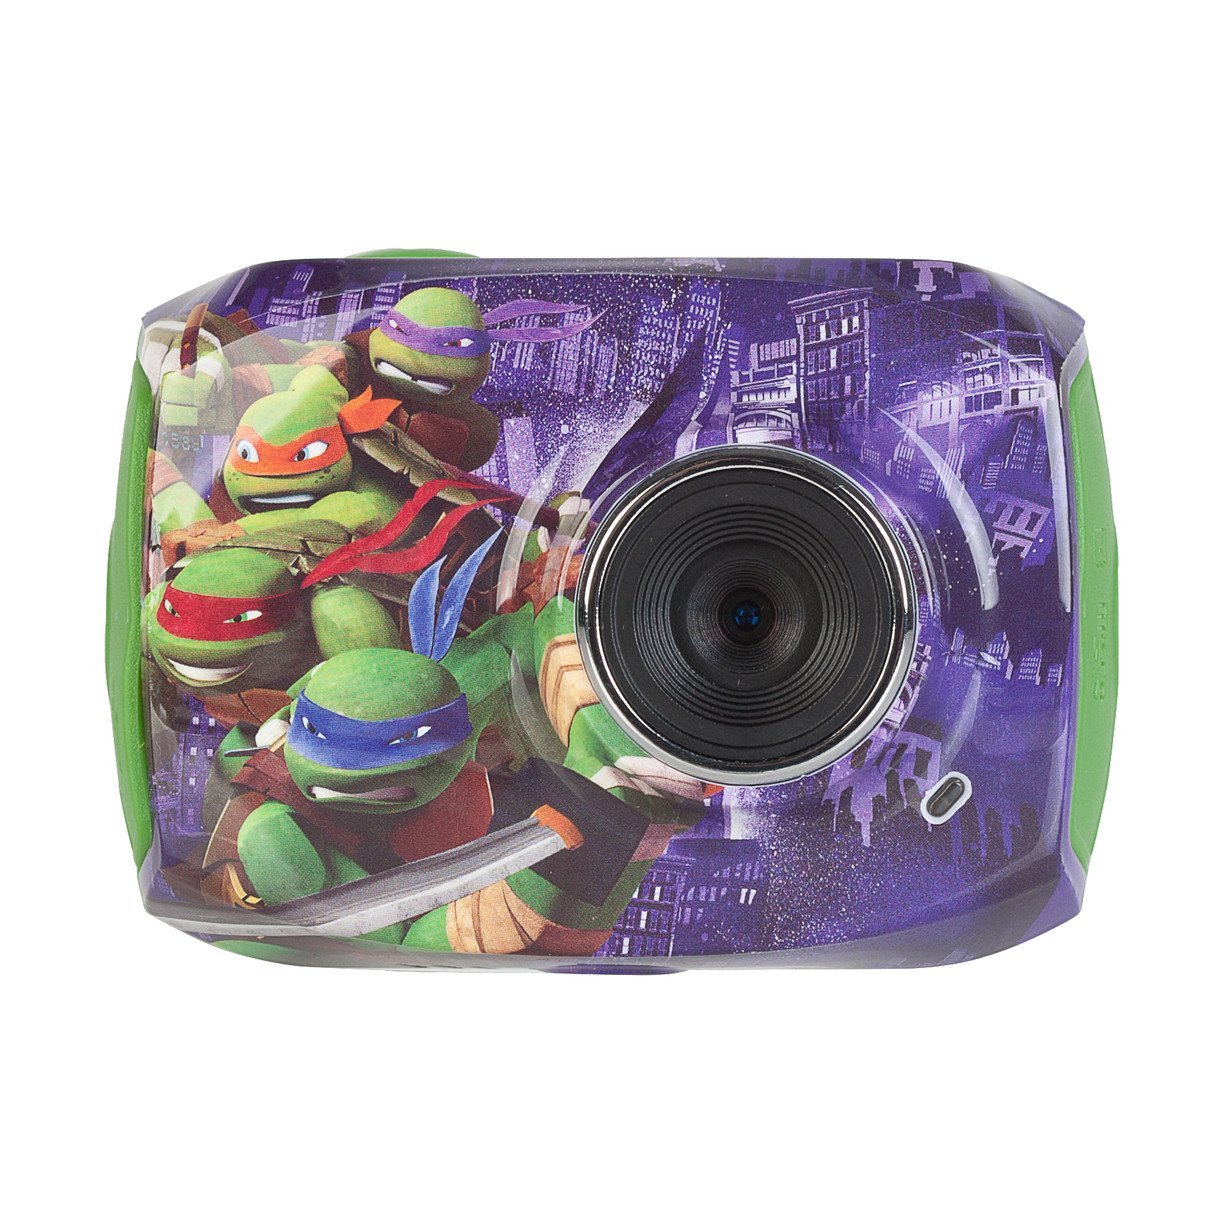 ninja-turtles-camcorder